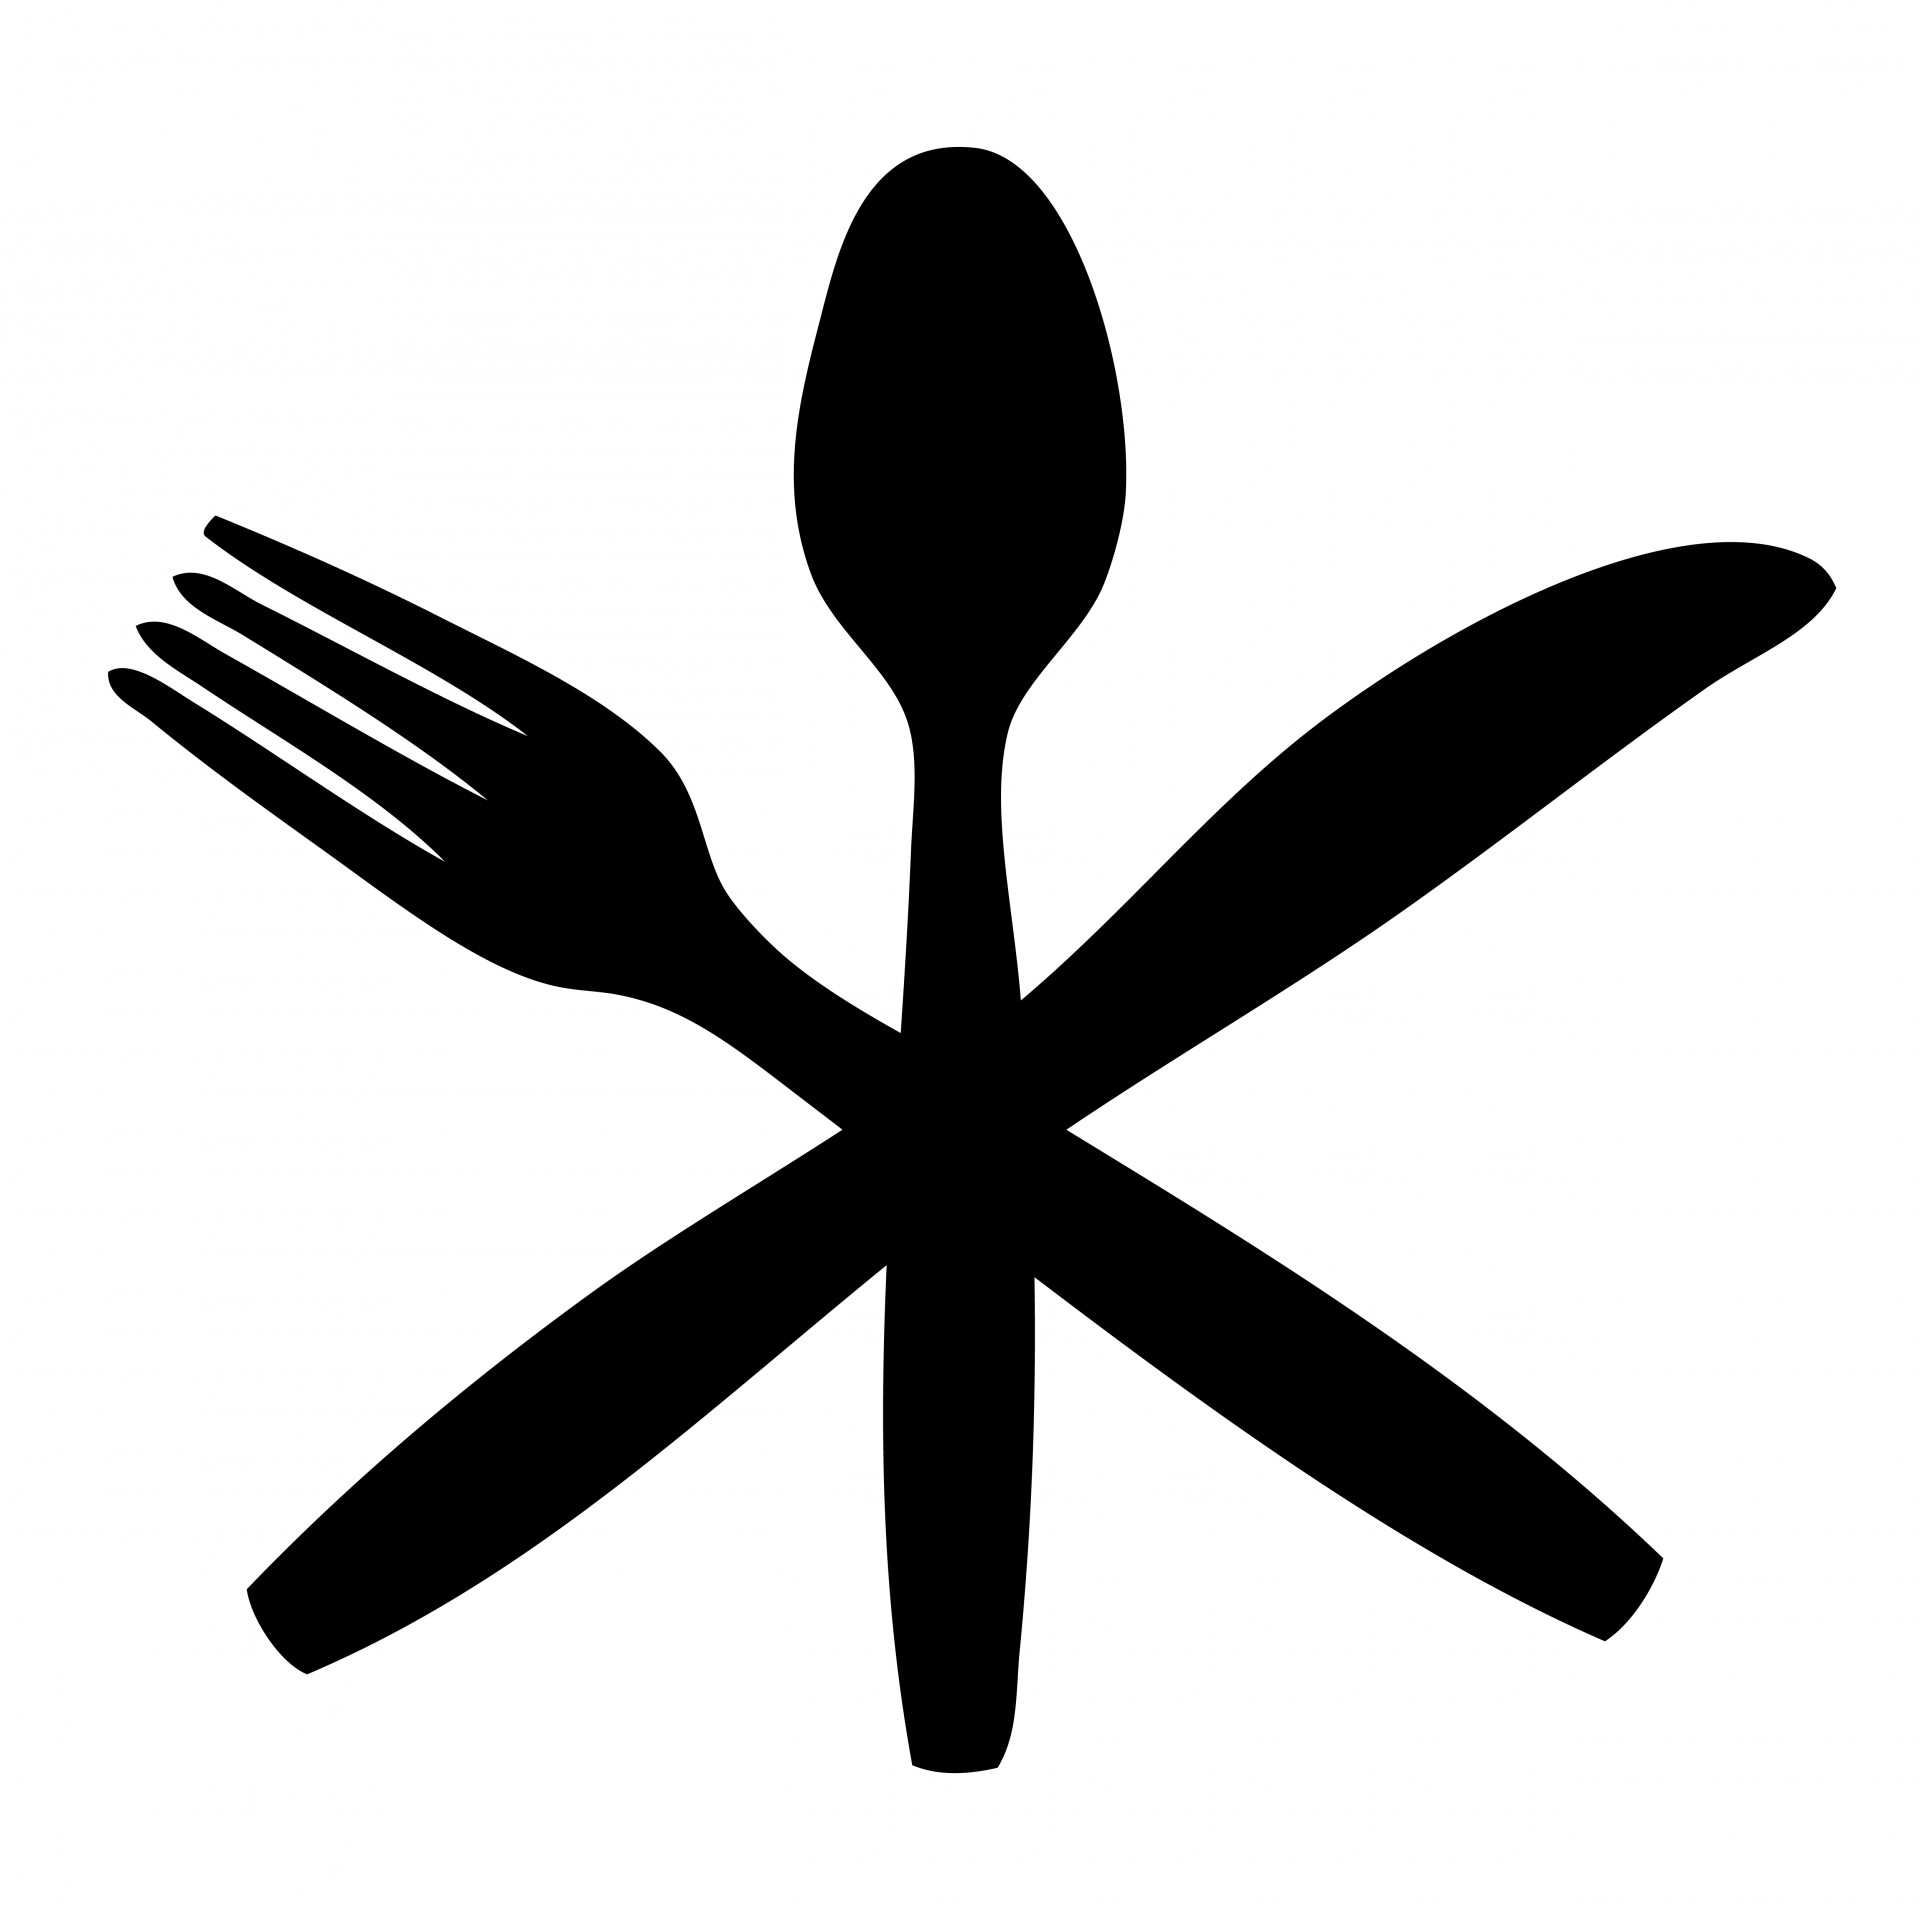 Cutlery,knife,fork,spoon,black